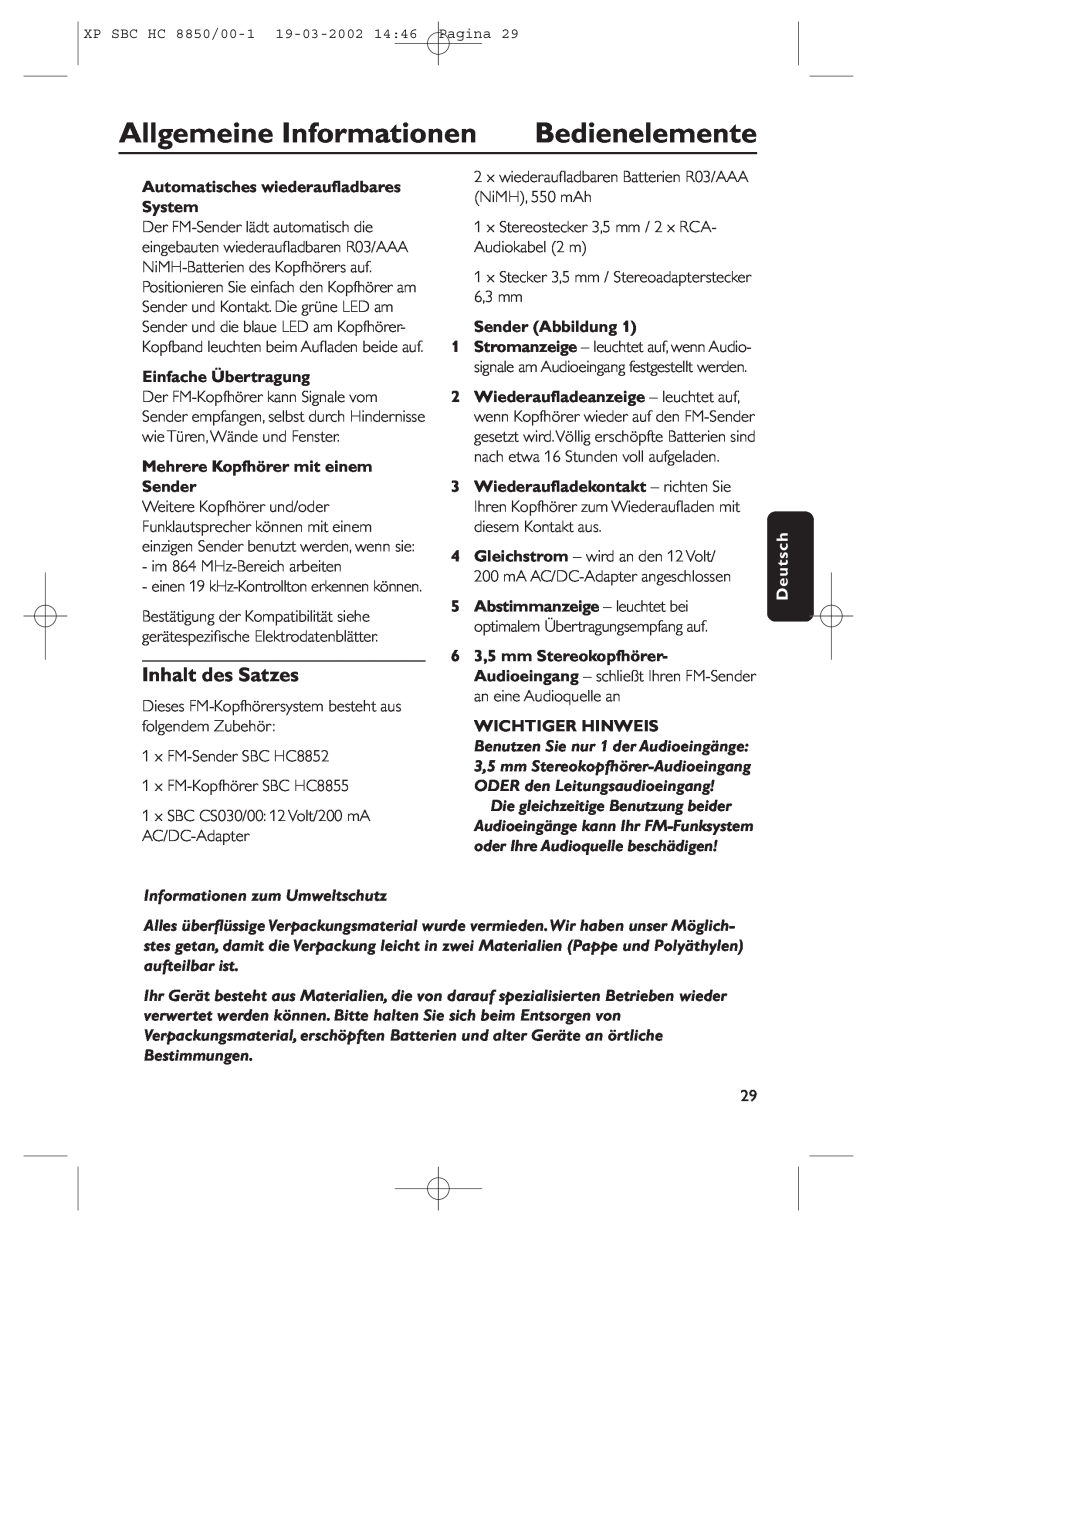 Philips HC8850 Bedienelemente, Allgemeine Informationen, Inhalt des Satzes, Automatisches wiederauﬂadbares System, Deutsch 